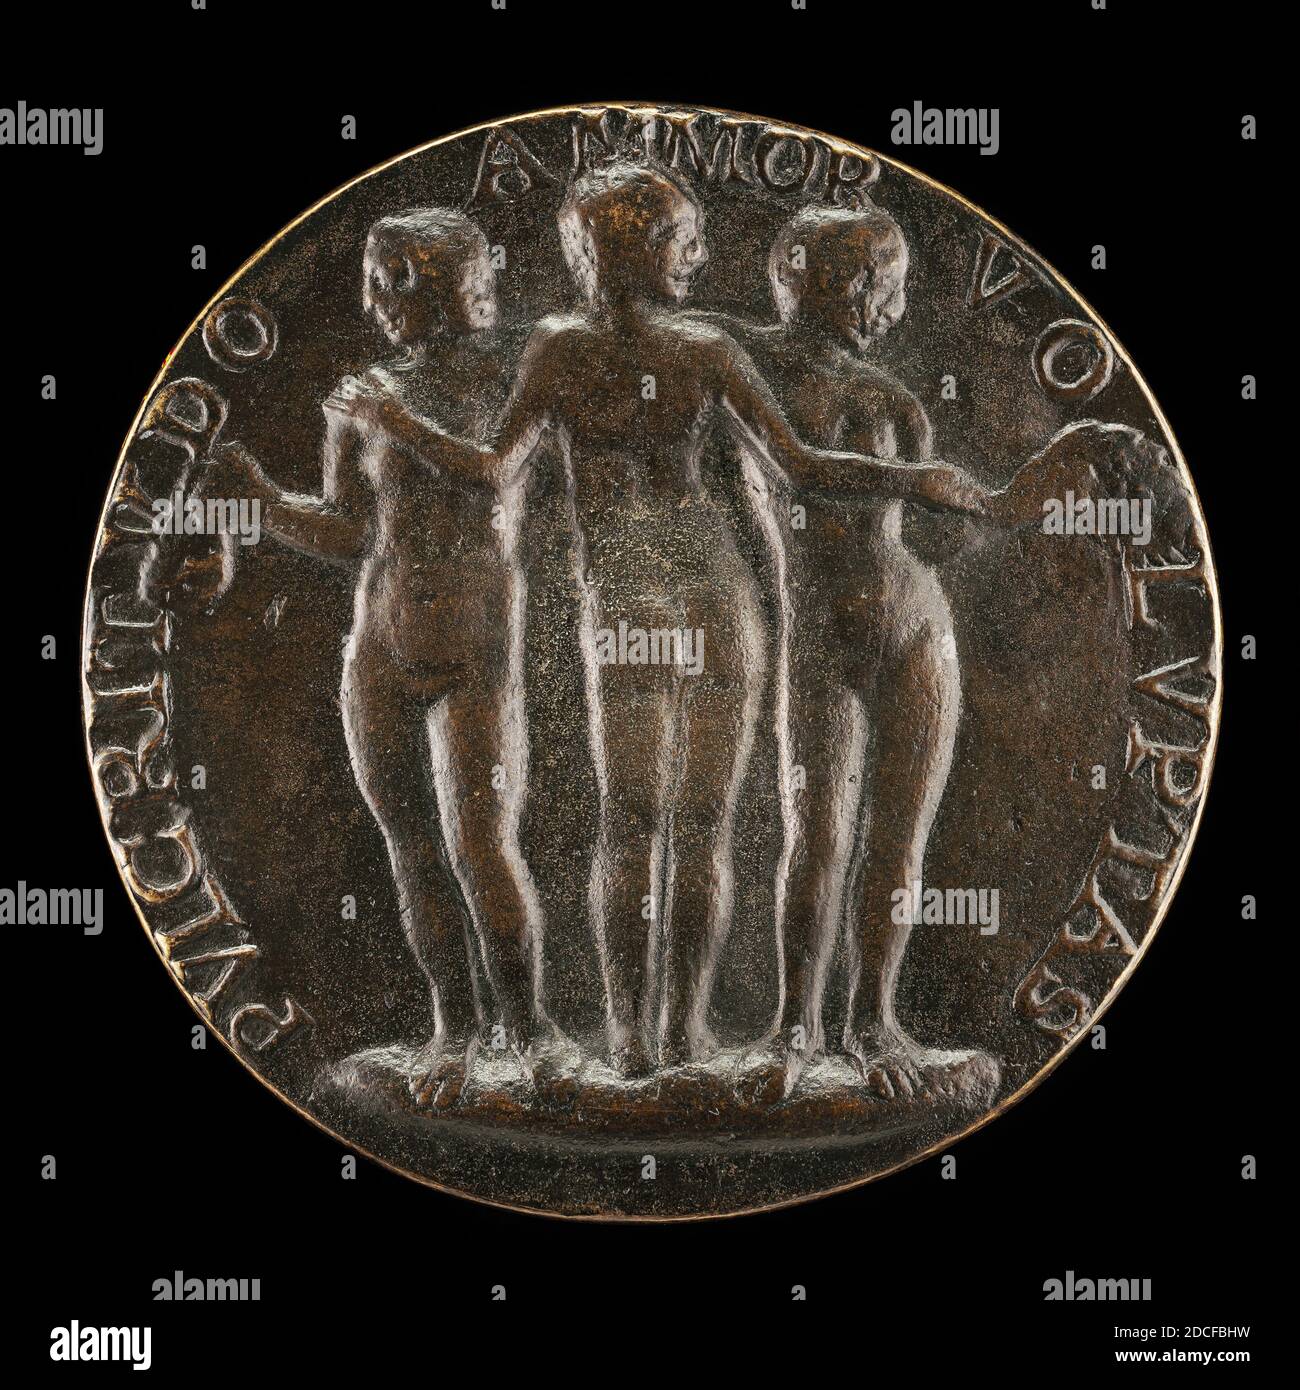 Artiste anonyme, (artiste), Niccolò Fiorentino, (artiste apparenté), Florentine, 1430 - 1514, The Three Graces, c. 1484/1485, bronze/fonte tardive, hors tout (diamètre): 8.19 cm (3 1/4 in.), poids brut: 207.75 gr (0.458 lb.), axe: 12:00 Banque D'Images